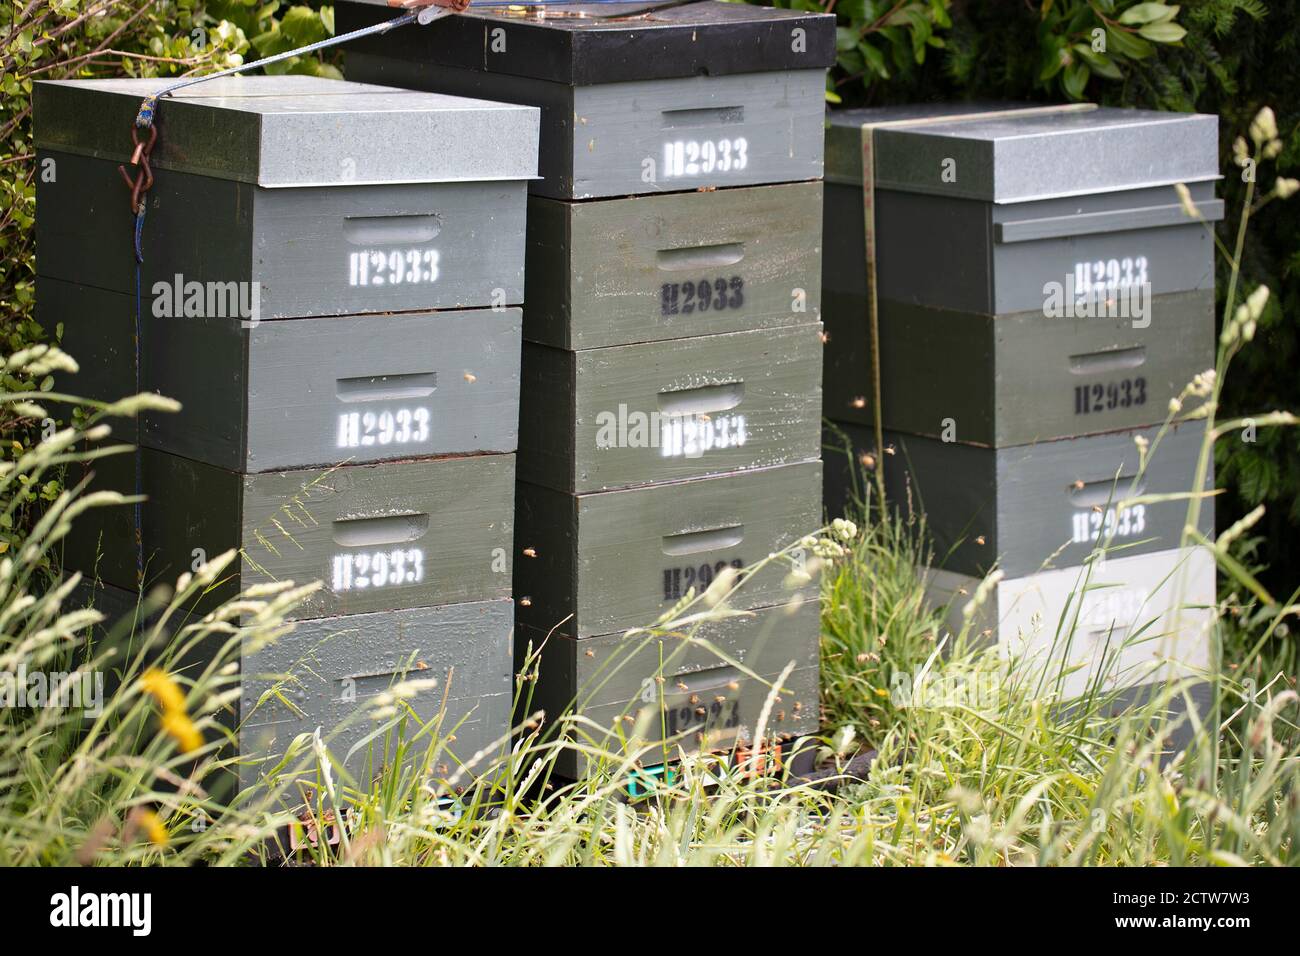 Grüne Holzbienenstöcke und Bienen im Bienenhaus in einem botanischen Garten in Wellington, Neuseeland. Imkerei oder Imkerei Konzept. Stockfoto